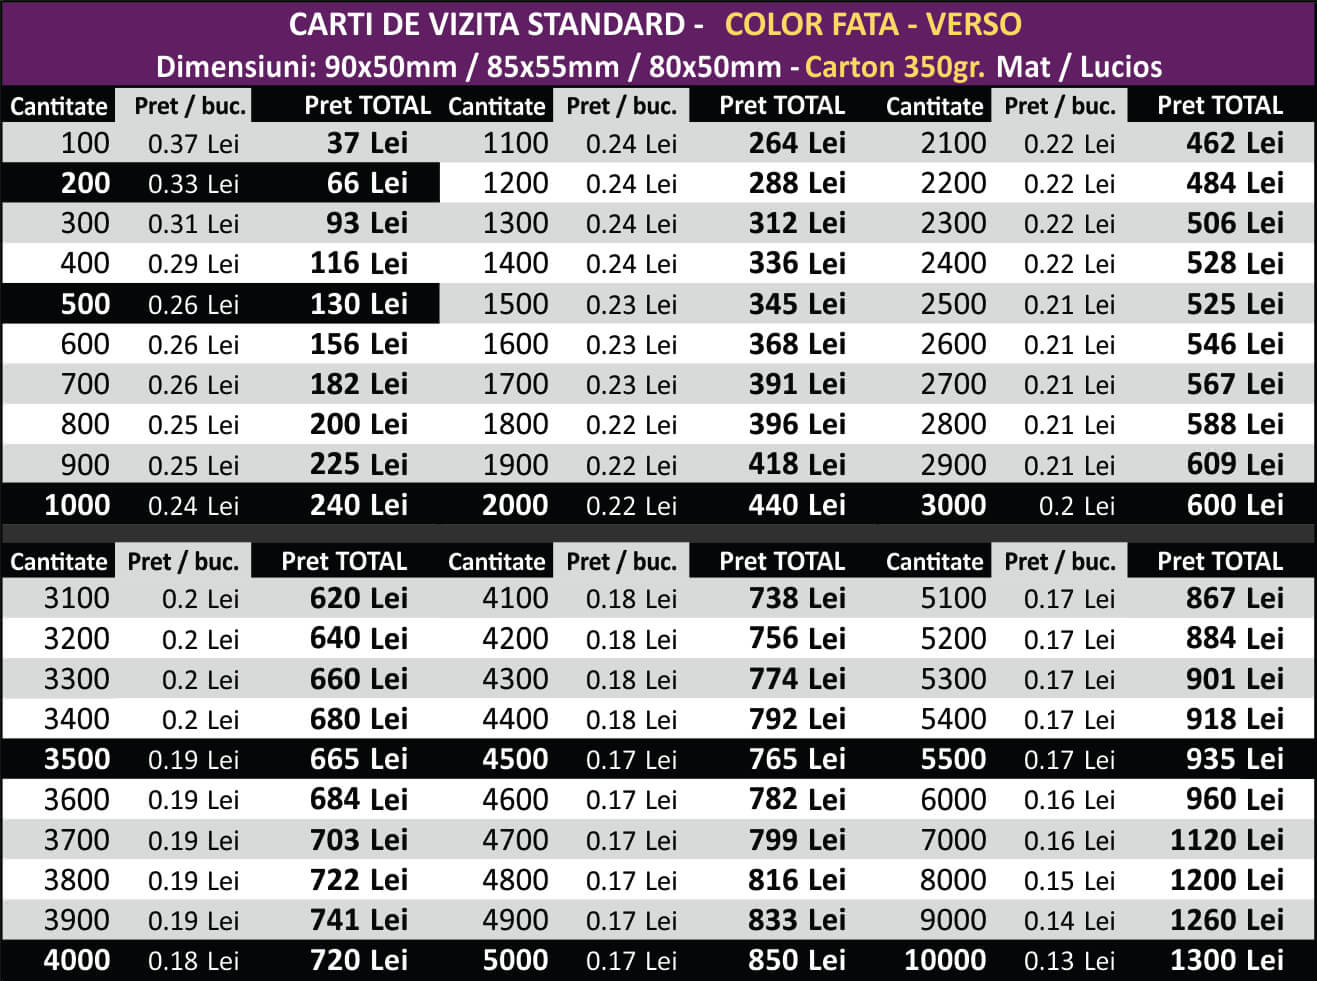 PRETURI Carti de vizita ieftine - actualizate - Color fata-verso 350gr - CDVi